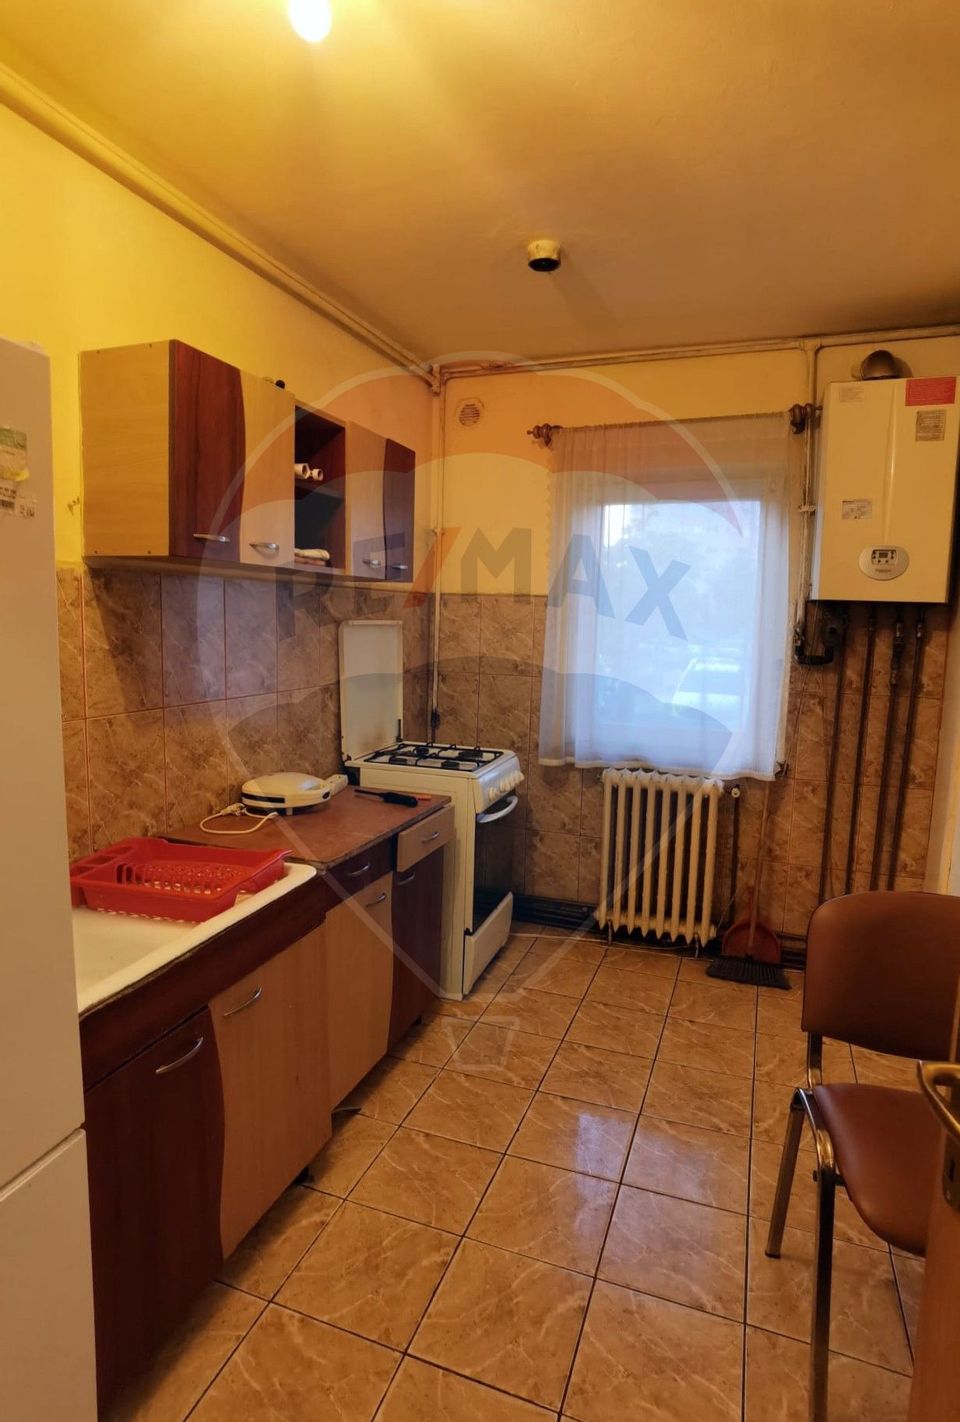 Apartament cu 3 camere de închiriat în zona Manastur 0% COMISION